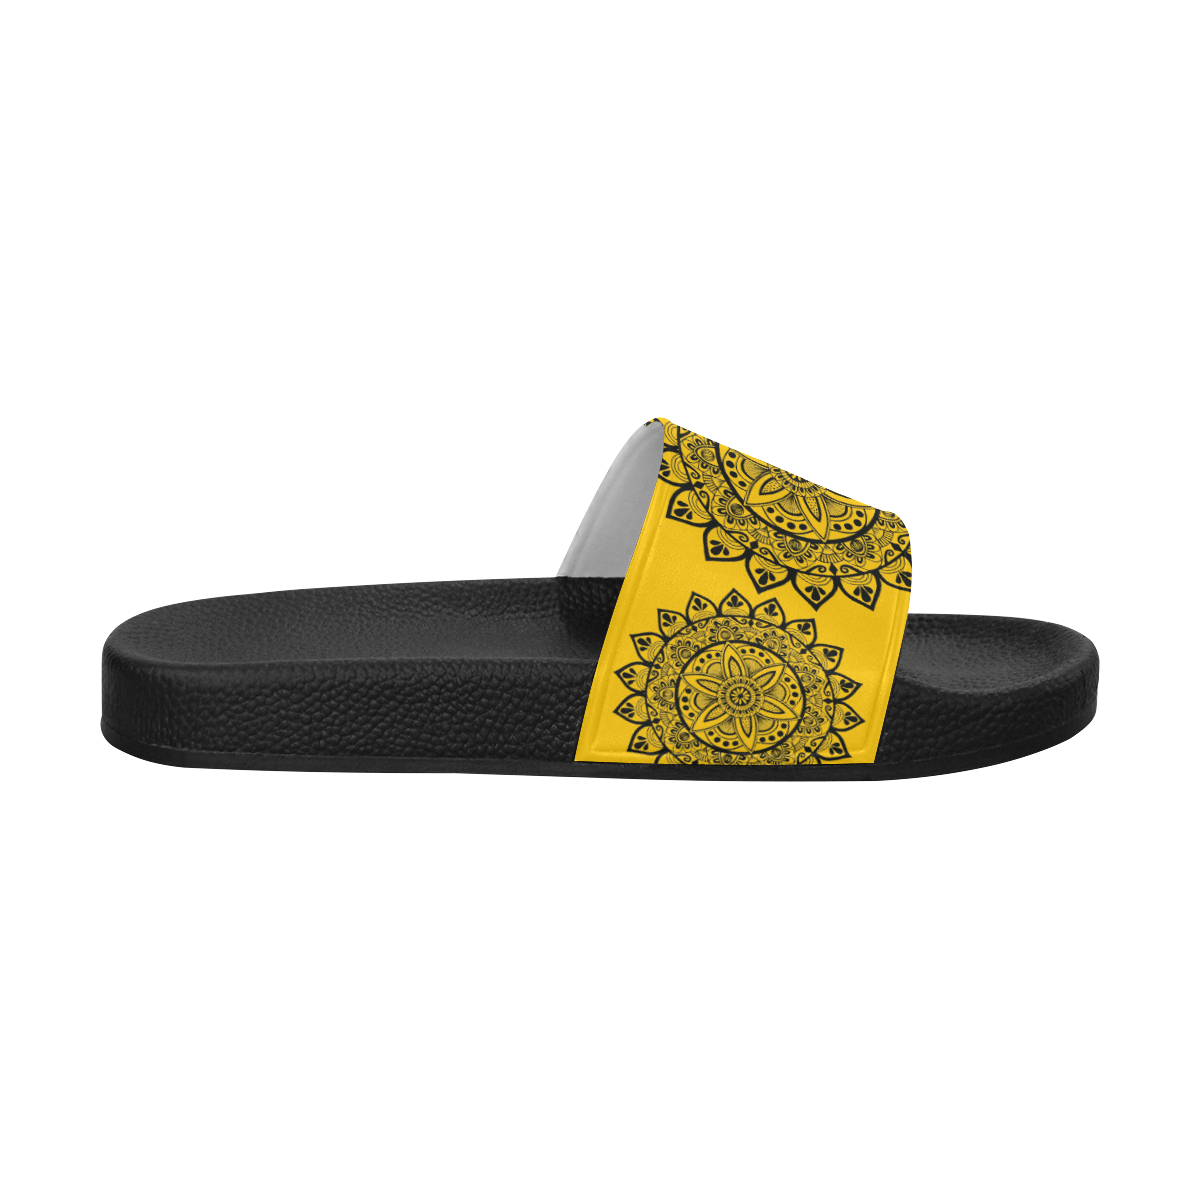 black mandala- yellow slides Women's Slide Sandals (Model 057)